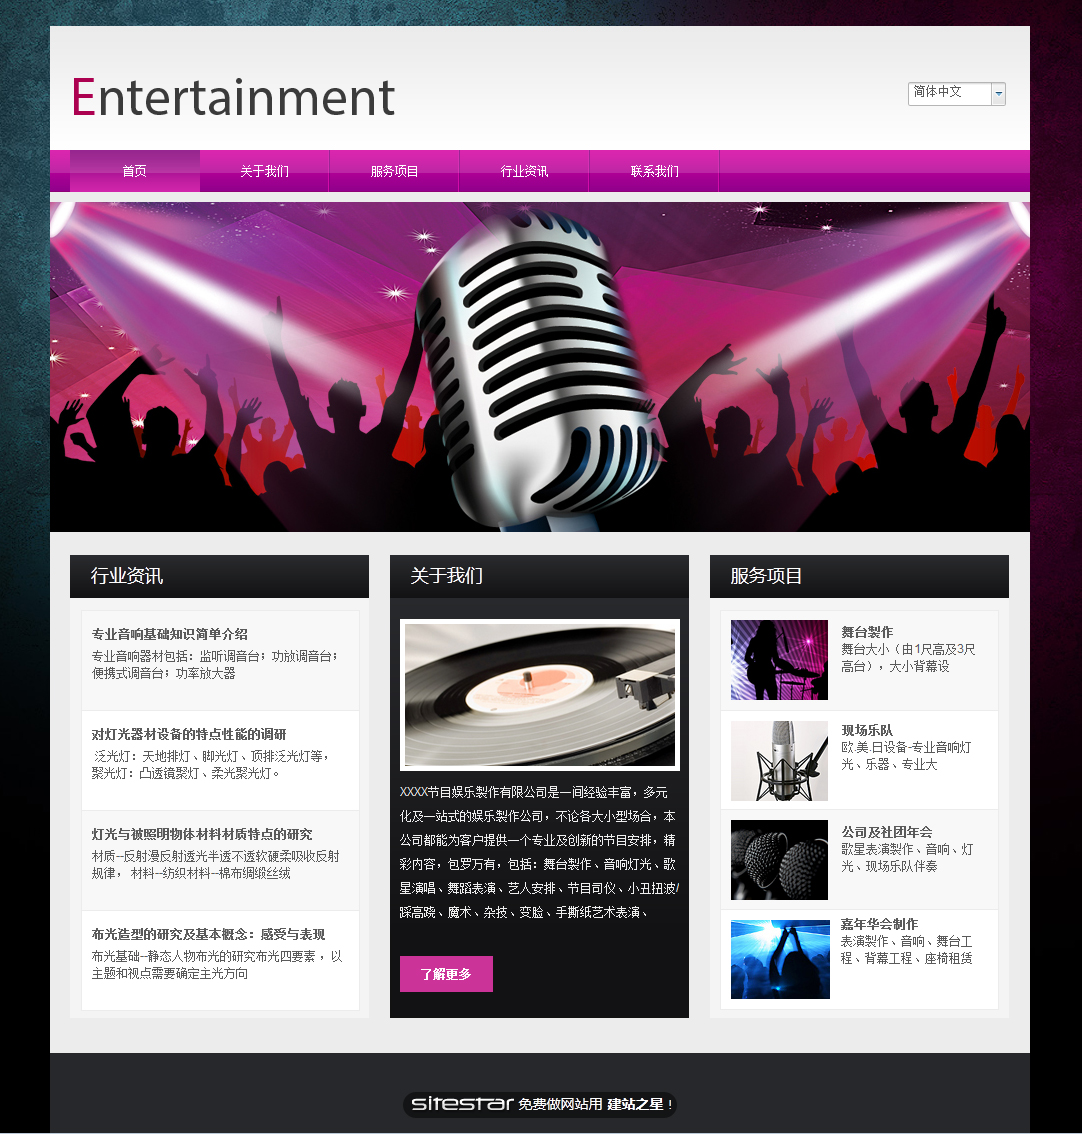 娱乐、休闲网站模板-entertainment-1